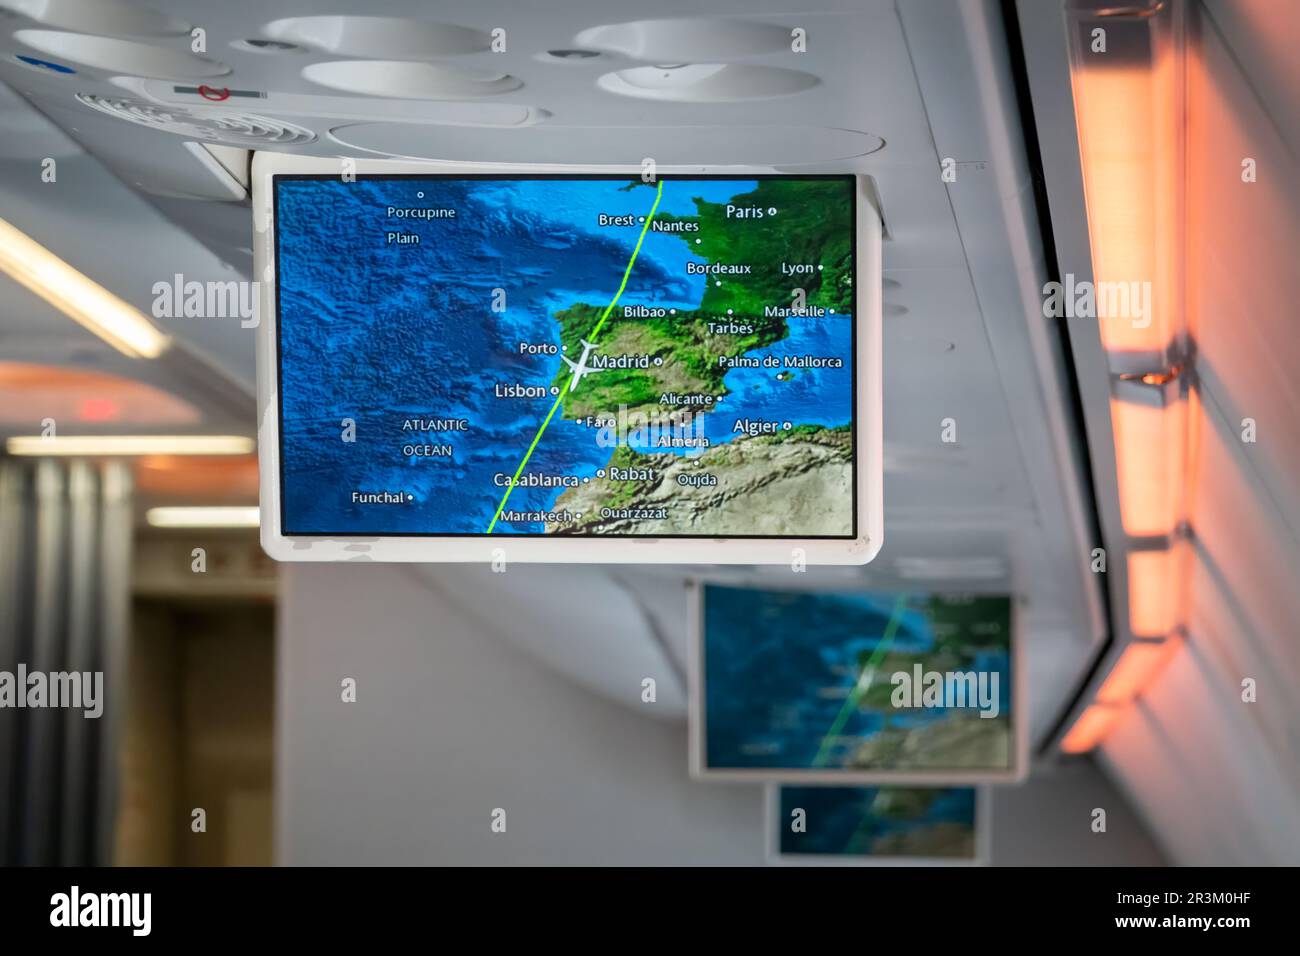 Un écran déroulant dans une cabine d'avion de passagers affiche des informations de vol pour les passagers avec les panneaux de position actuelle affichés sur une carte Banque D'Images